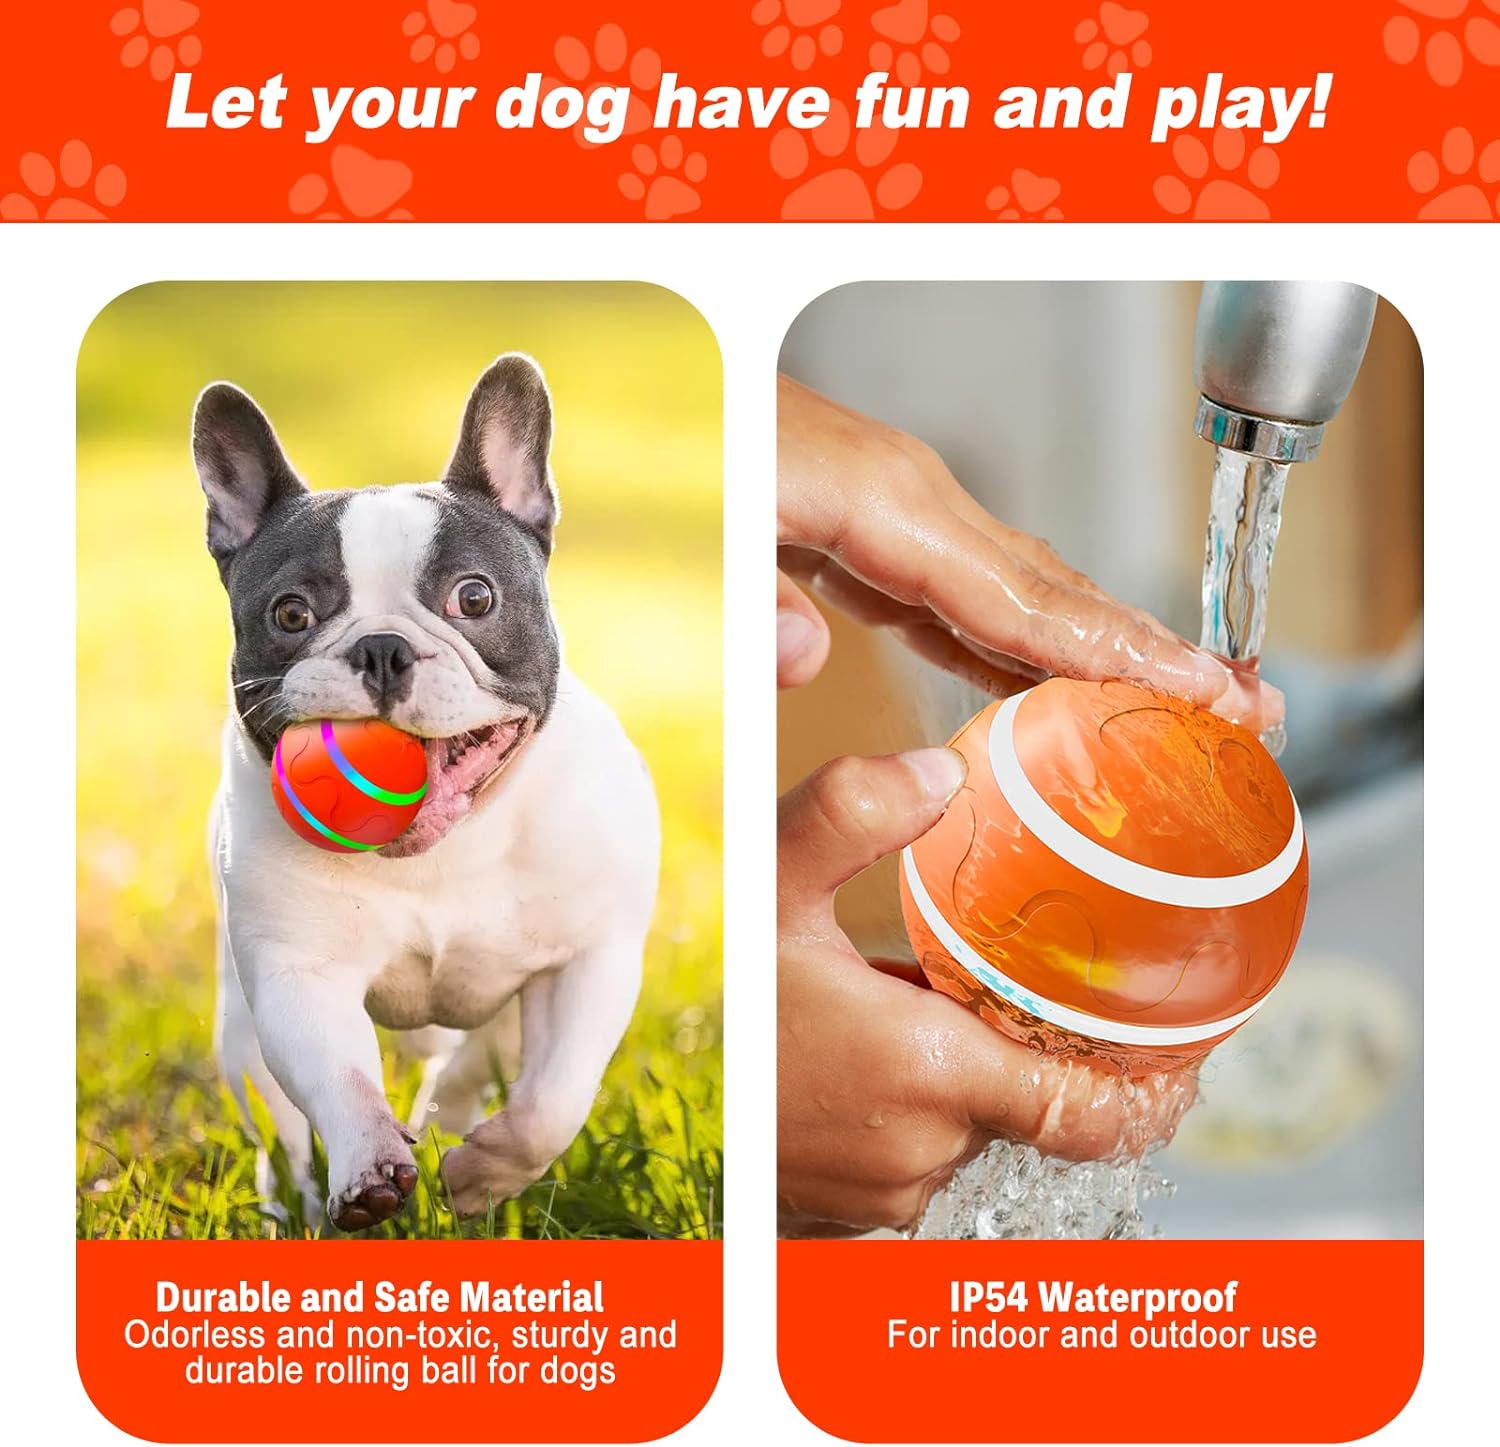  Syhood 2 juguetes interactivos para perros, juguetes  automáticos de bola rodante, juguetes para perros en movimiento con luces  LED de flash seguro y duradero, bolas de juguete para perros grandes,  medianos